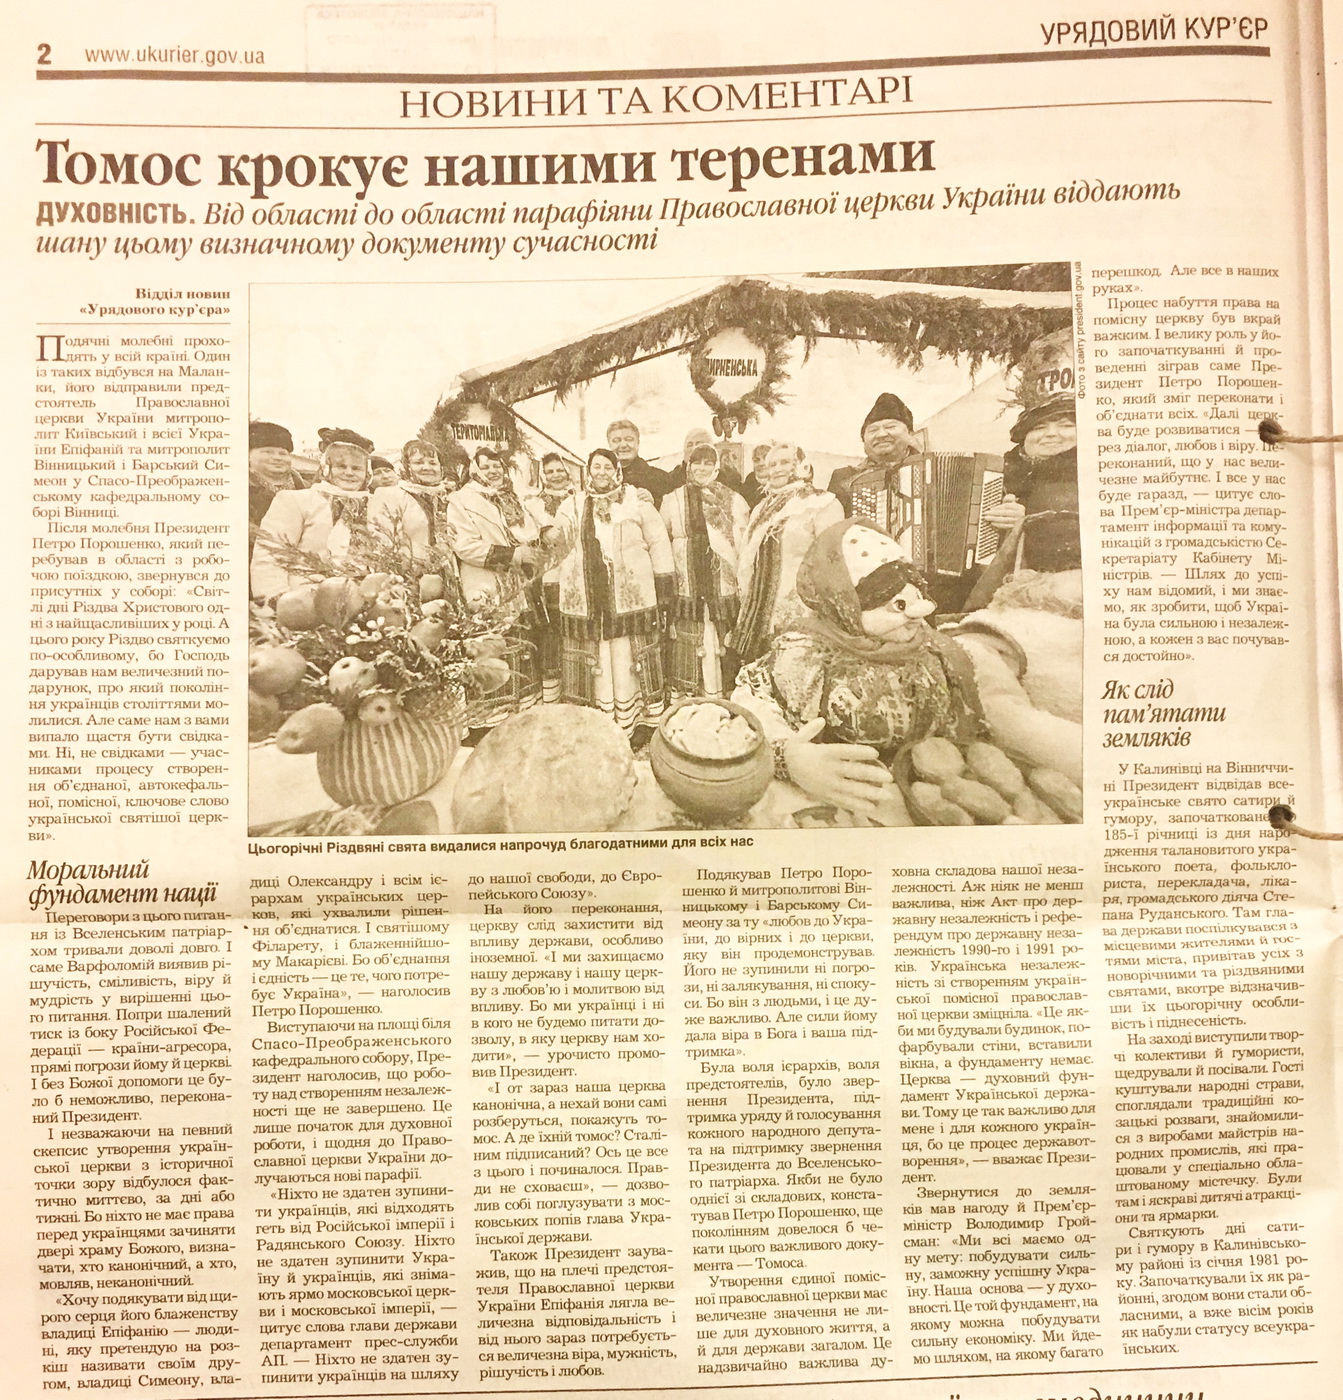 28 01 2019 Kyiv gazety dzynsa poroshenko3